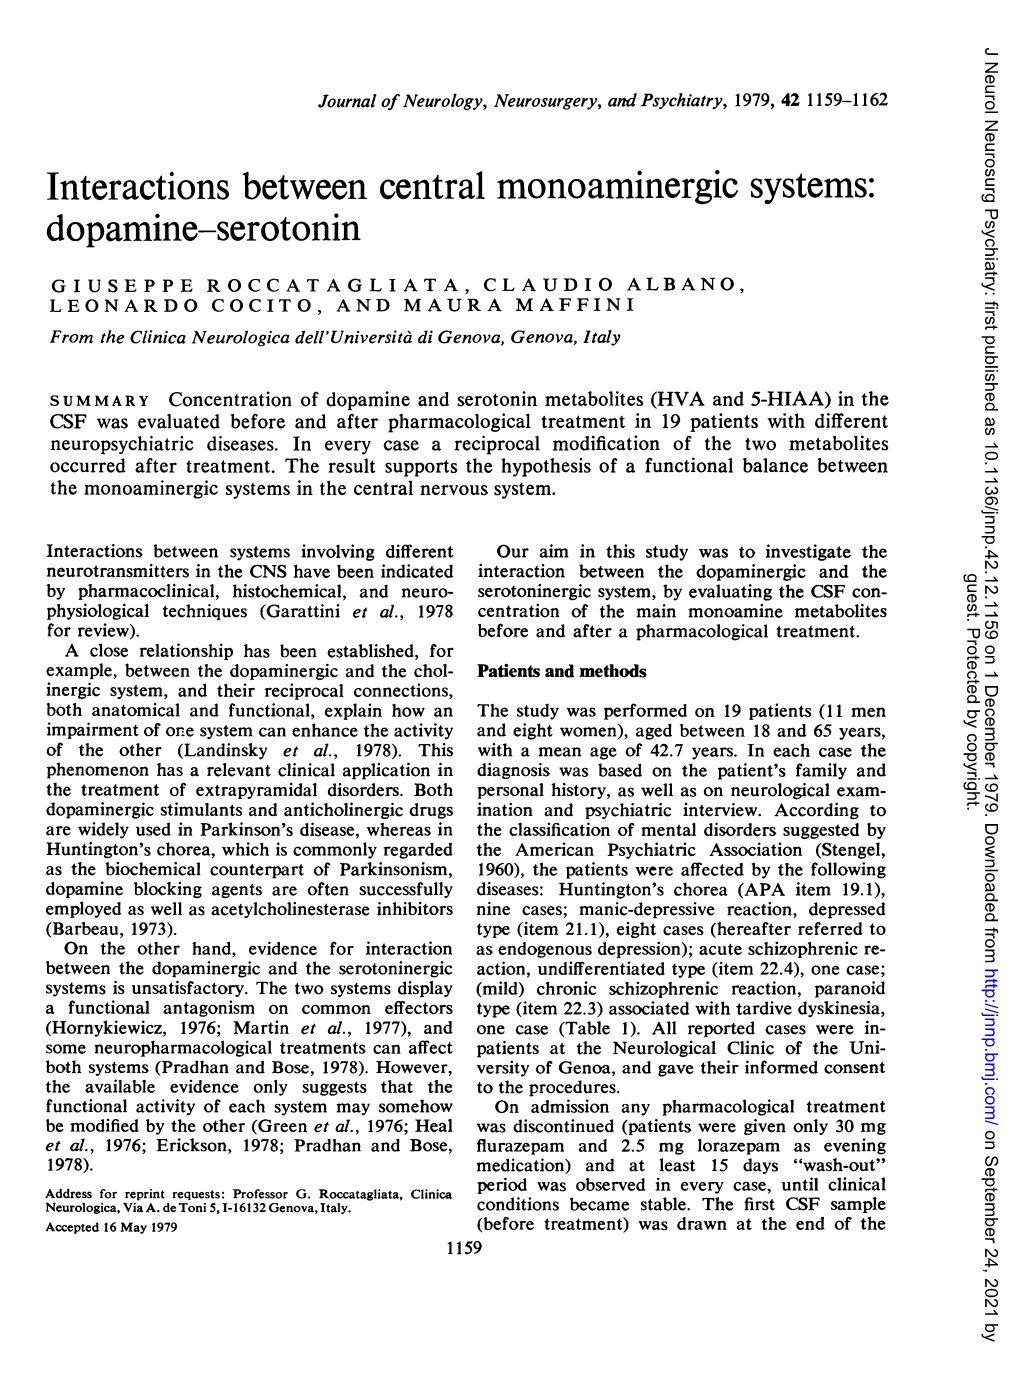 Dopamine-Serotonin